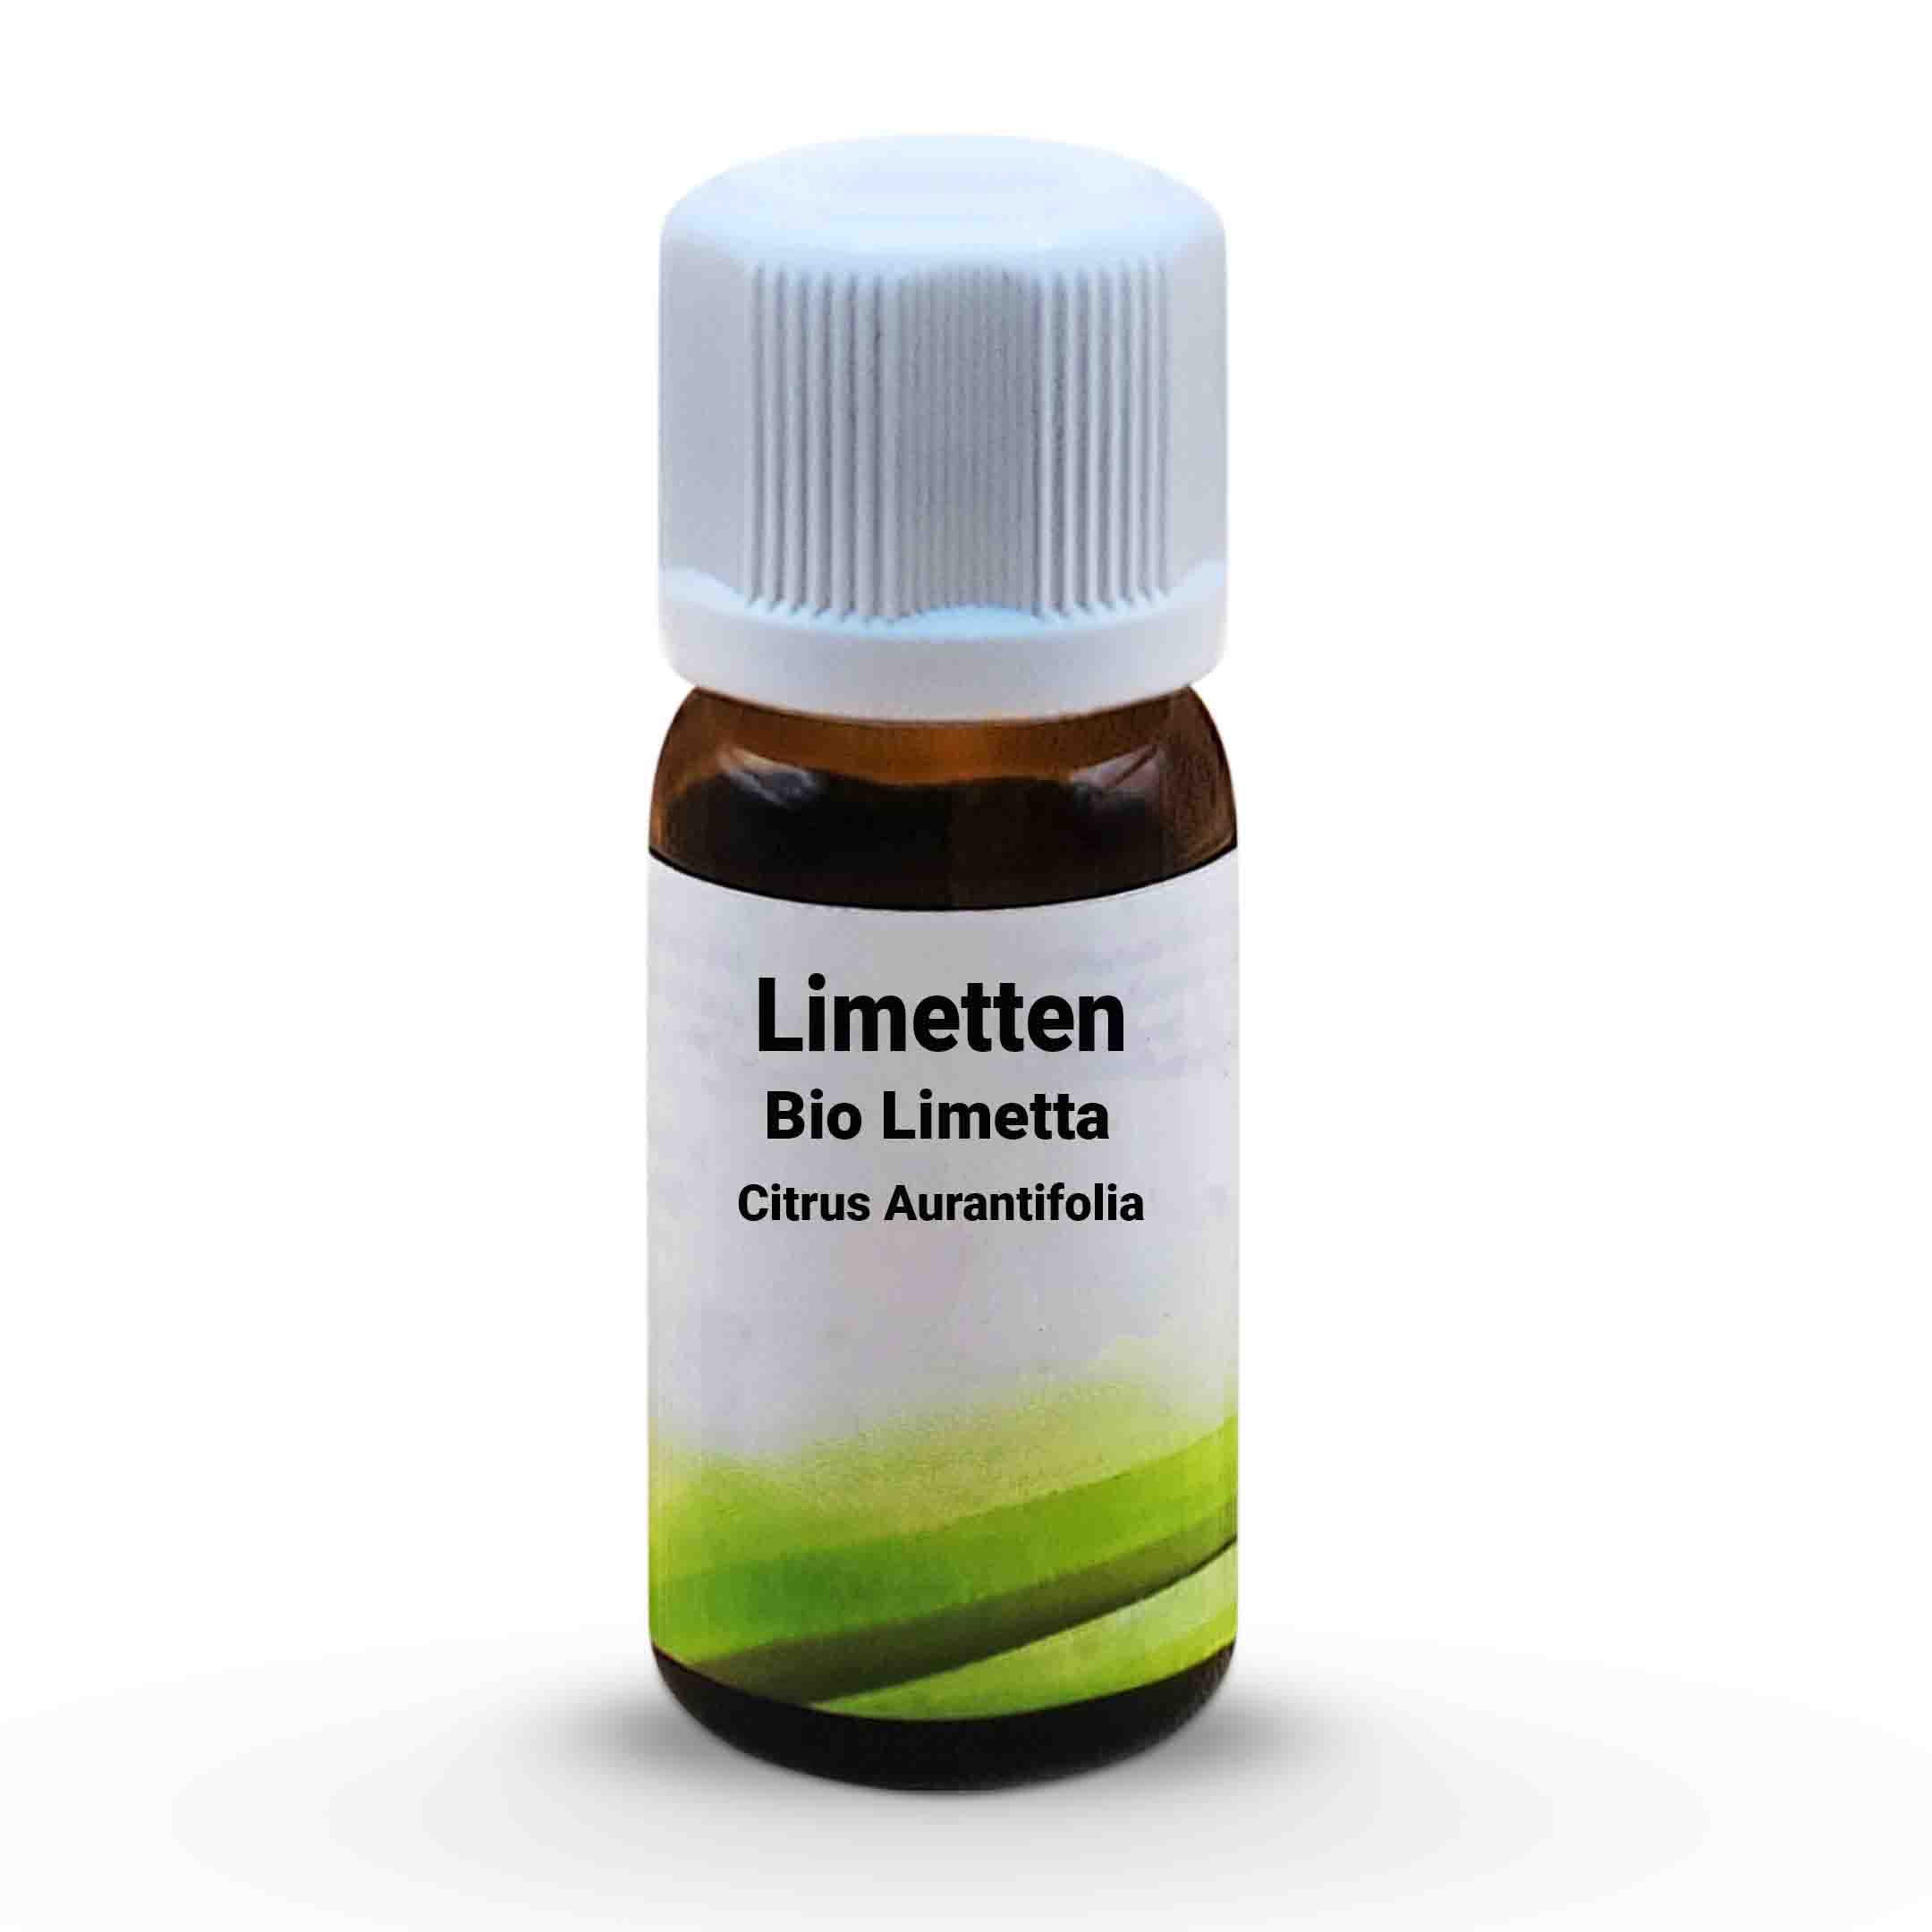 Bio Limetta - Citrus Aurantifolia